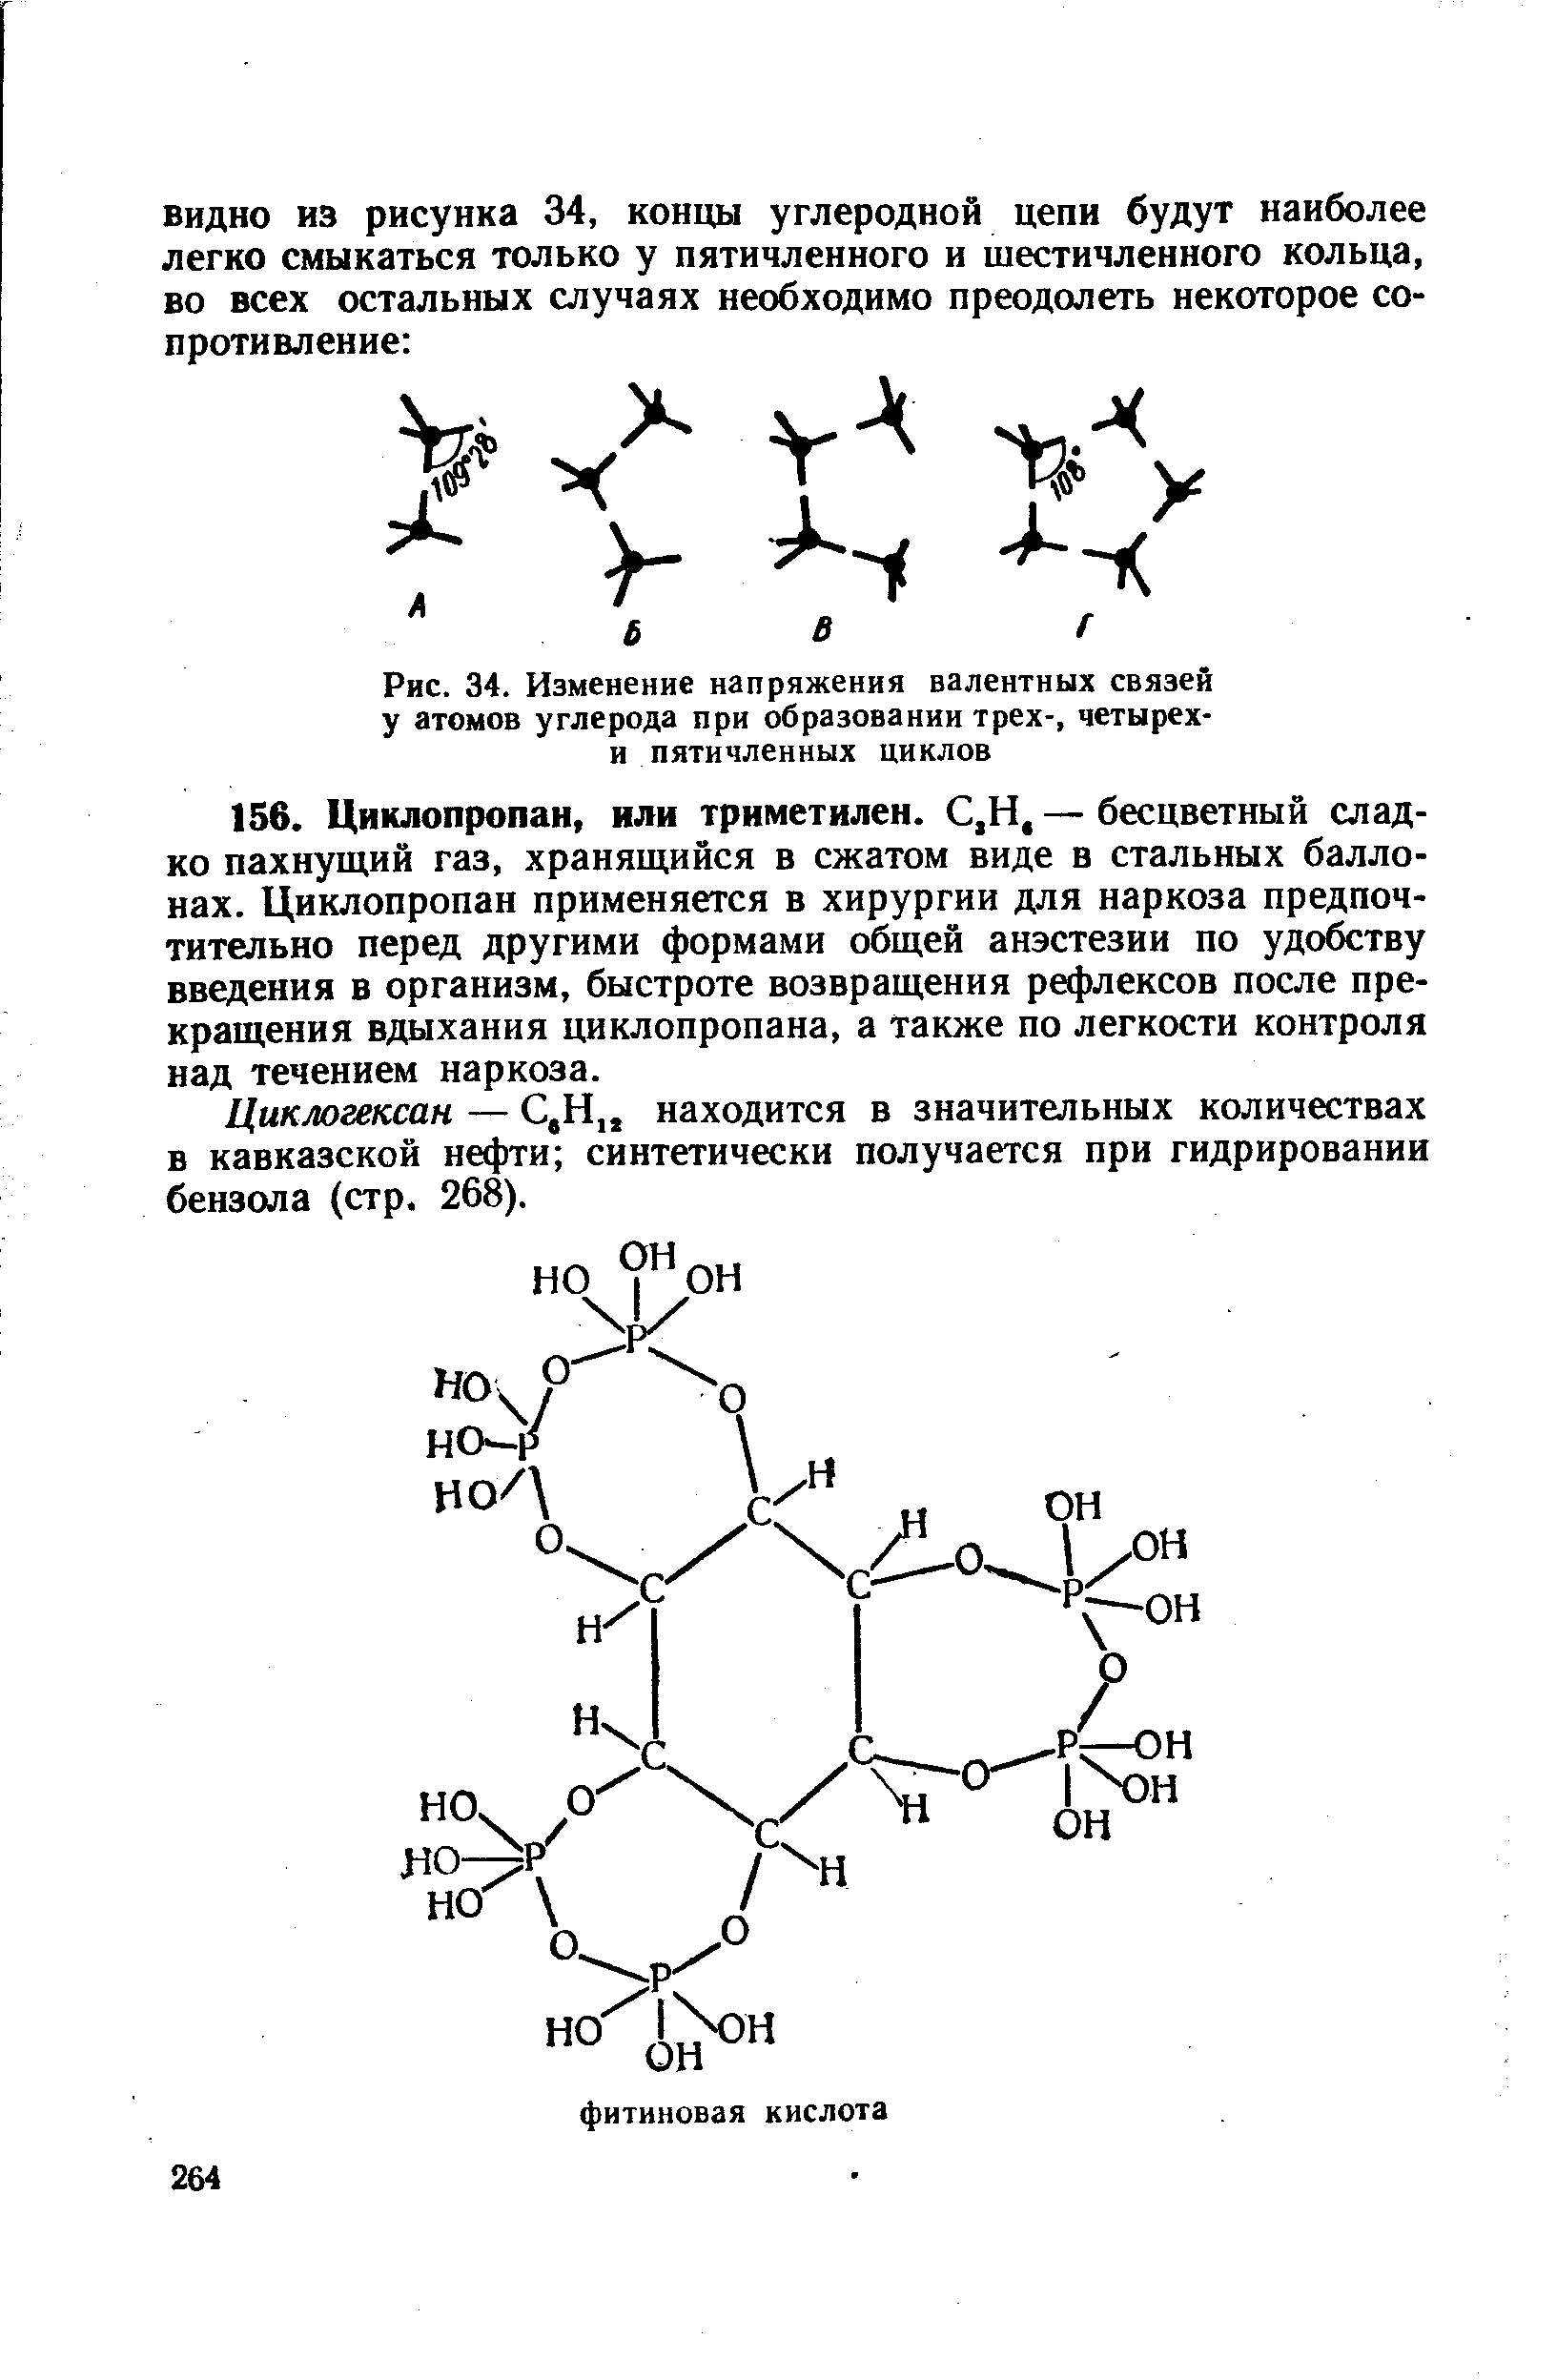 Циклогексан — С,Н находится в значительных количествах в кавказской нефти синтетически получается при гидрировании бензола (стр. 268).